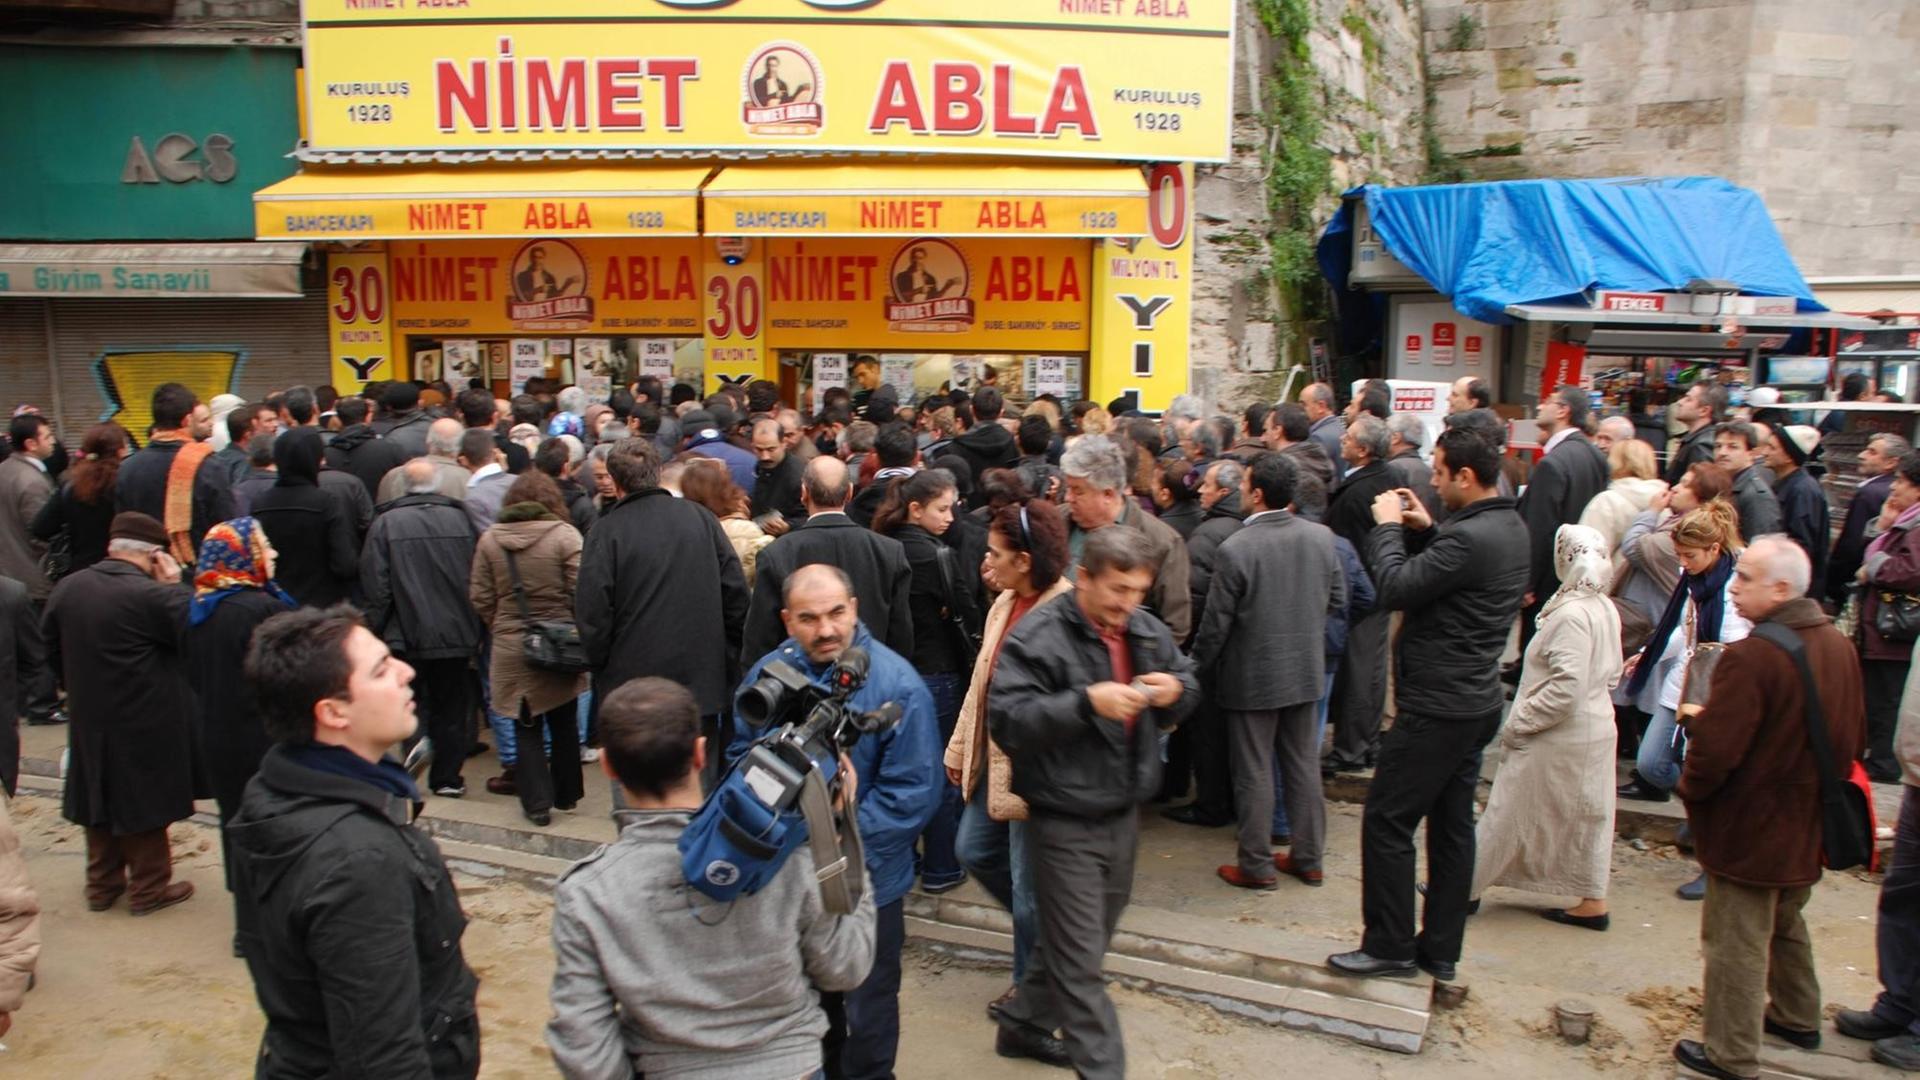 Jedes Jahr drängen sich die Menschen vor dem Stand von Nimet Abla in Istanbul, um Lose für die große Silvester-Lotterie zu kaufen. Auch für Verandte in Deutschland wird hier gekauft.